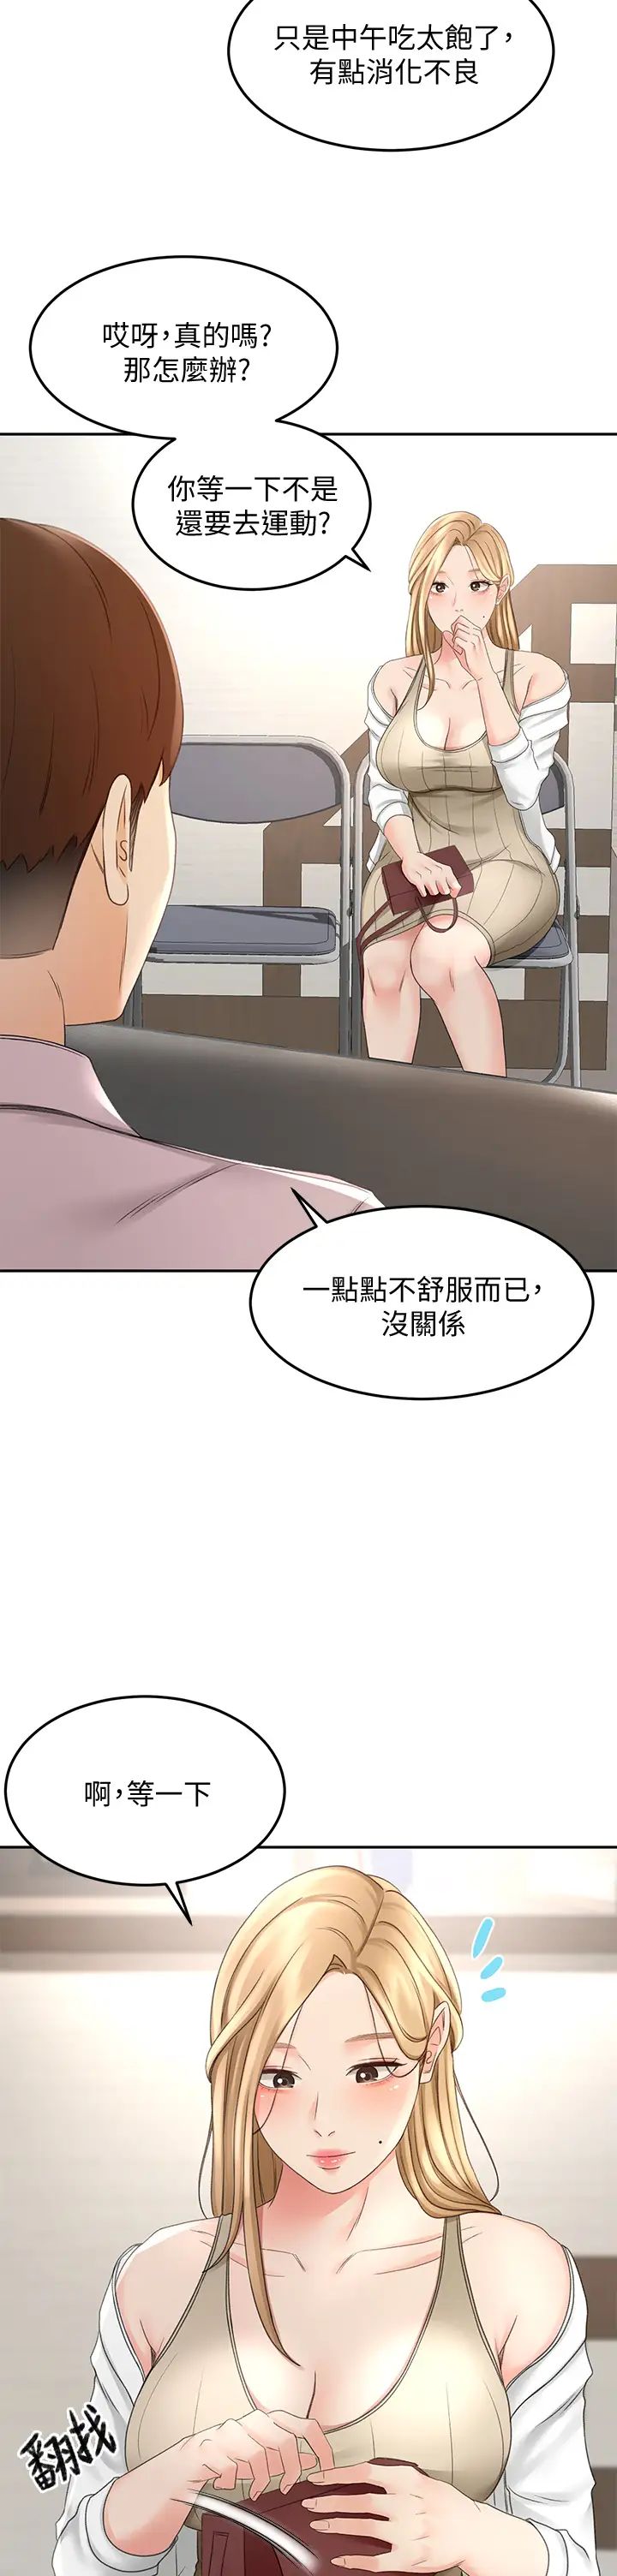 韩国污漫画 劍道學姐 第24话 在初恋面前被口交 25